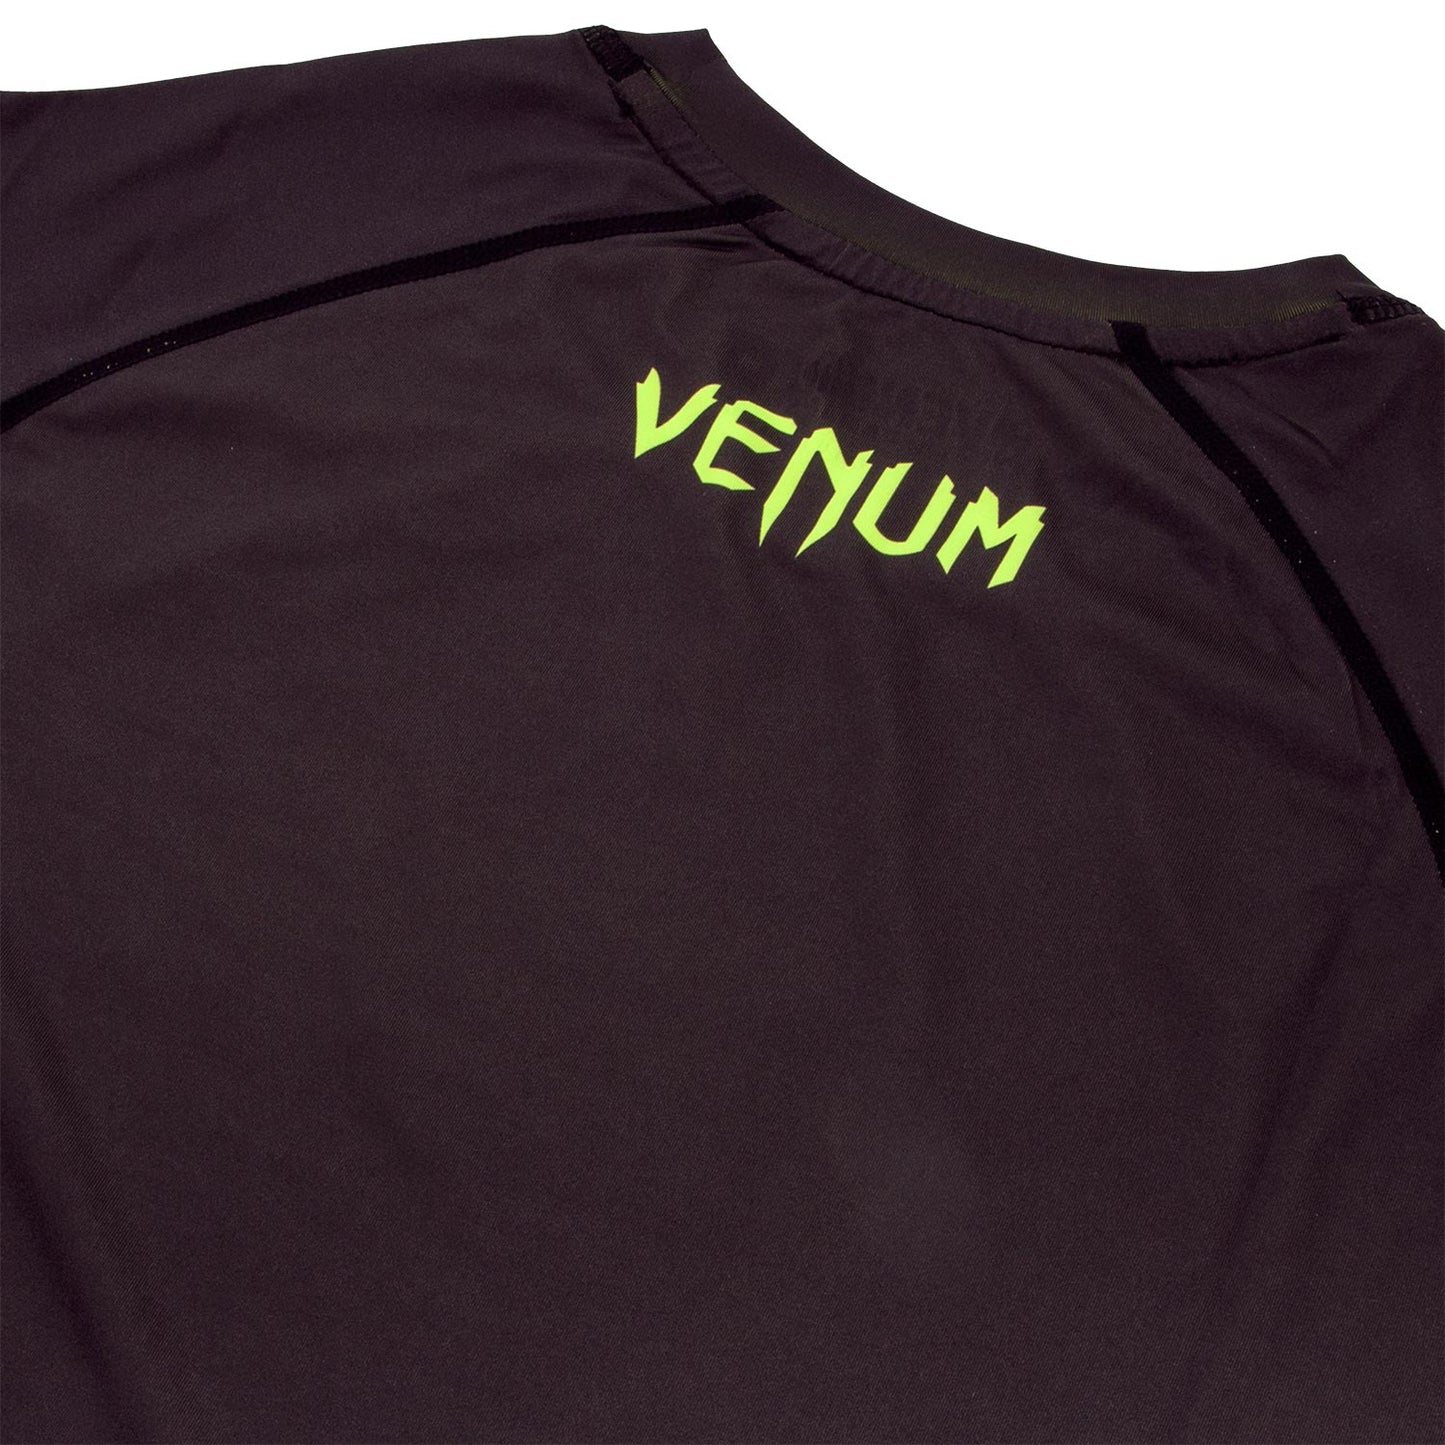 Camiseta de Compresión Venum Contender 3.0 - Mangas Cortas - Negro/Amarillo Fluo